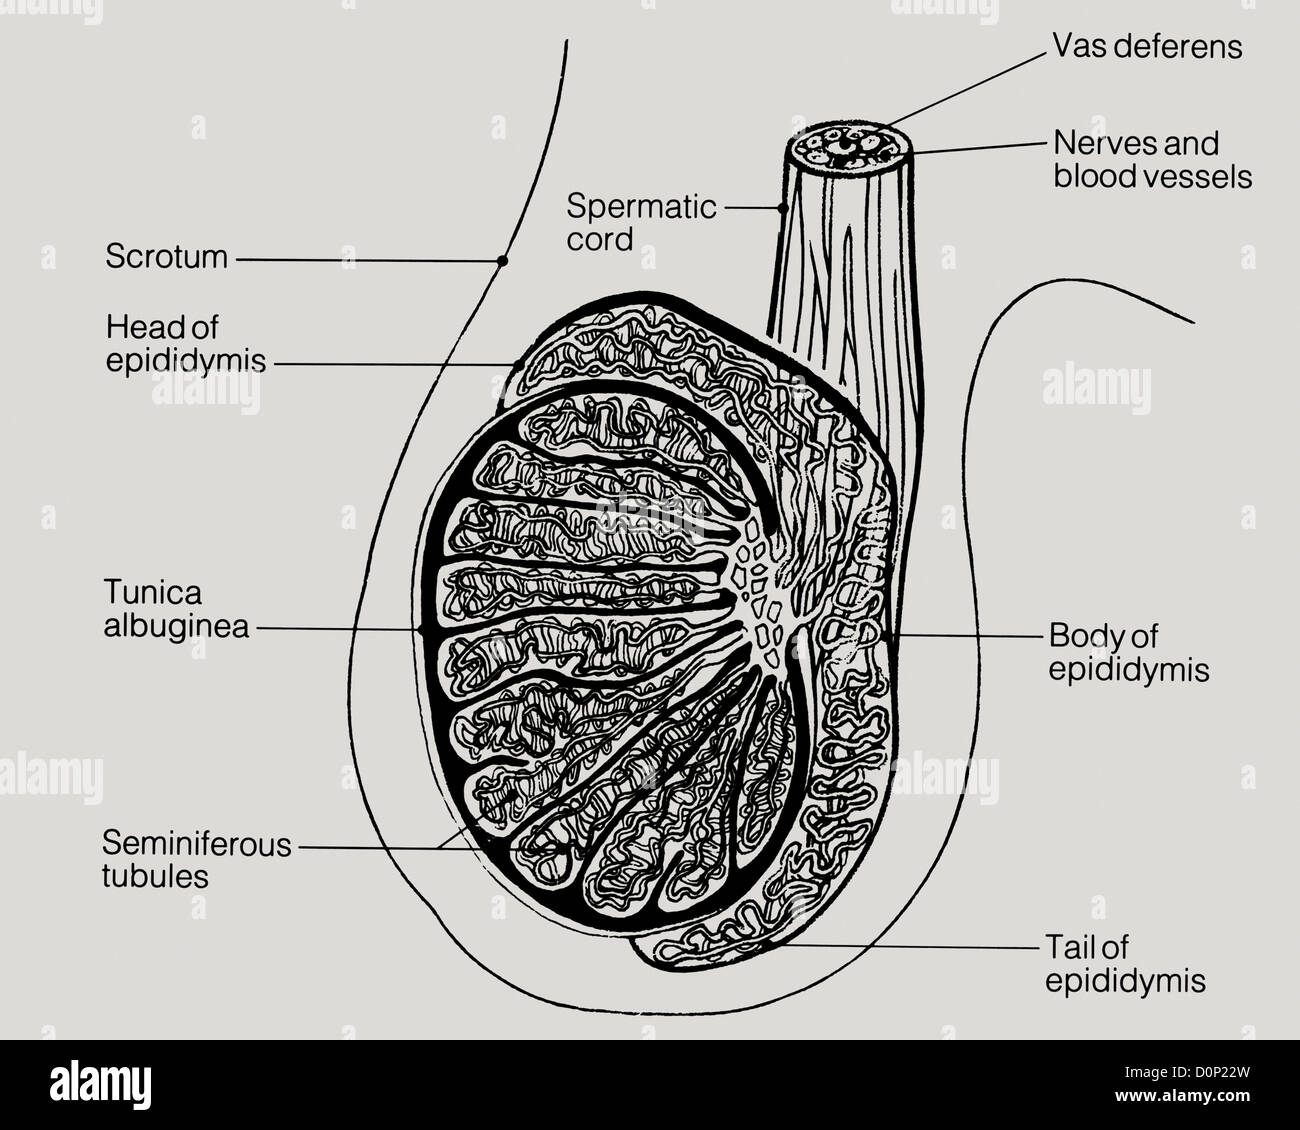 Un disegno lineare di una vista laterale di testicoli umani, compreso lo scroto, epididimo, e vas deferens. Foto Stock